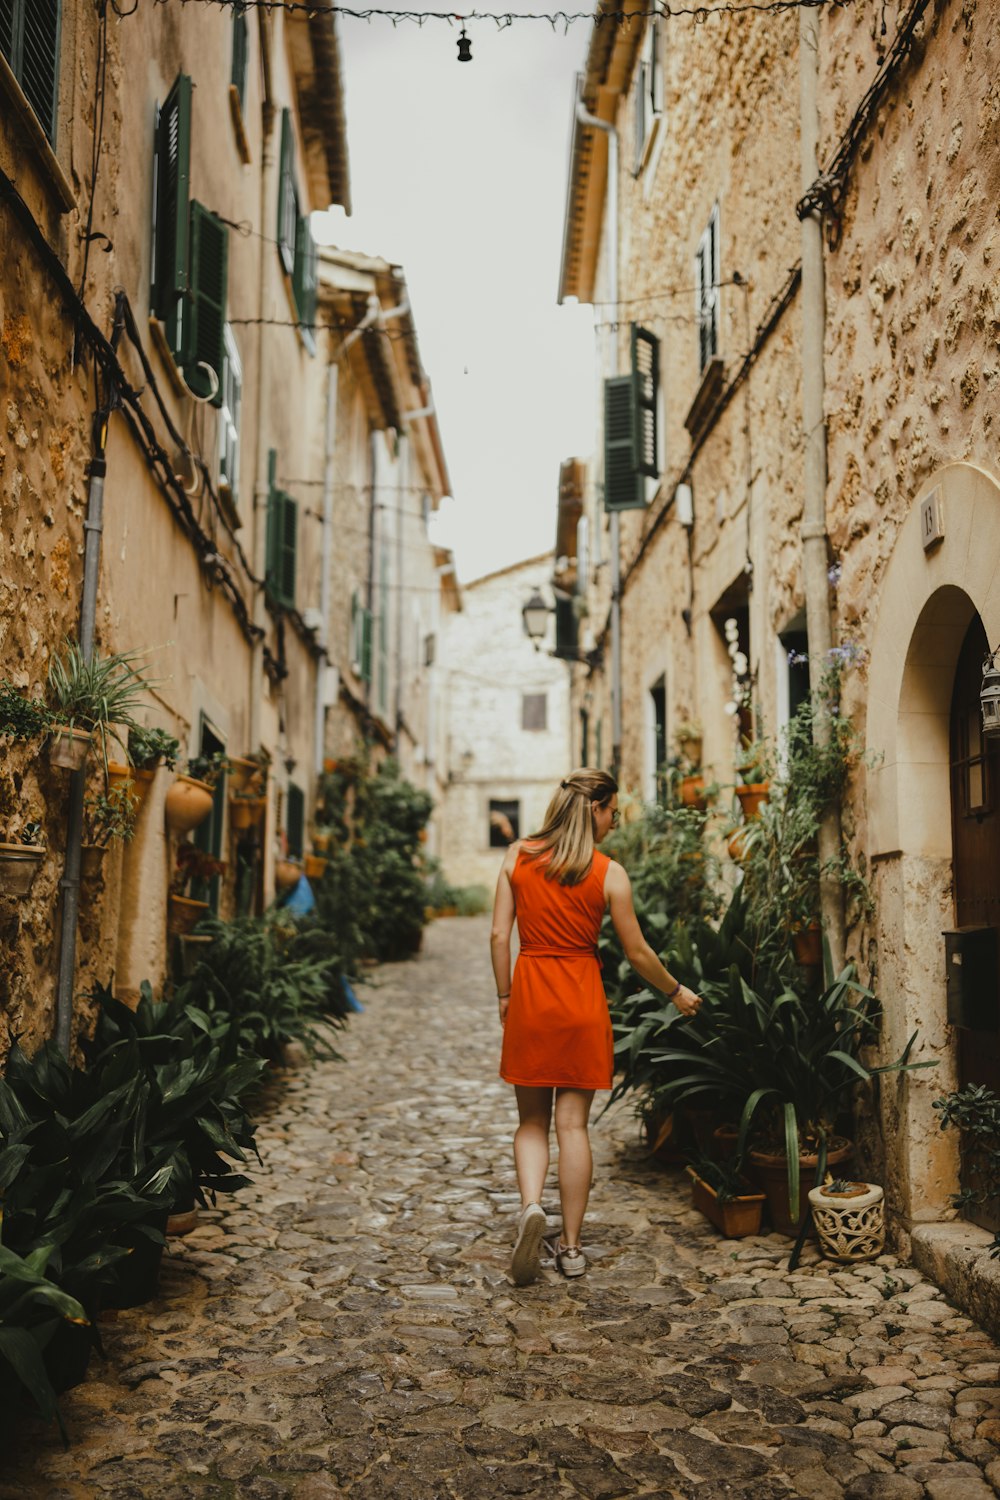 Una donna in un vestito arancione che cammina lungo una strada di ciottoli  foto – Strada Immagine gratuita su Unsplash